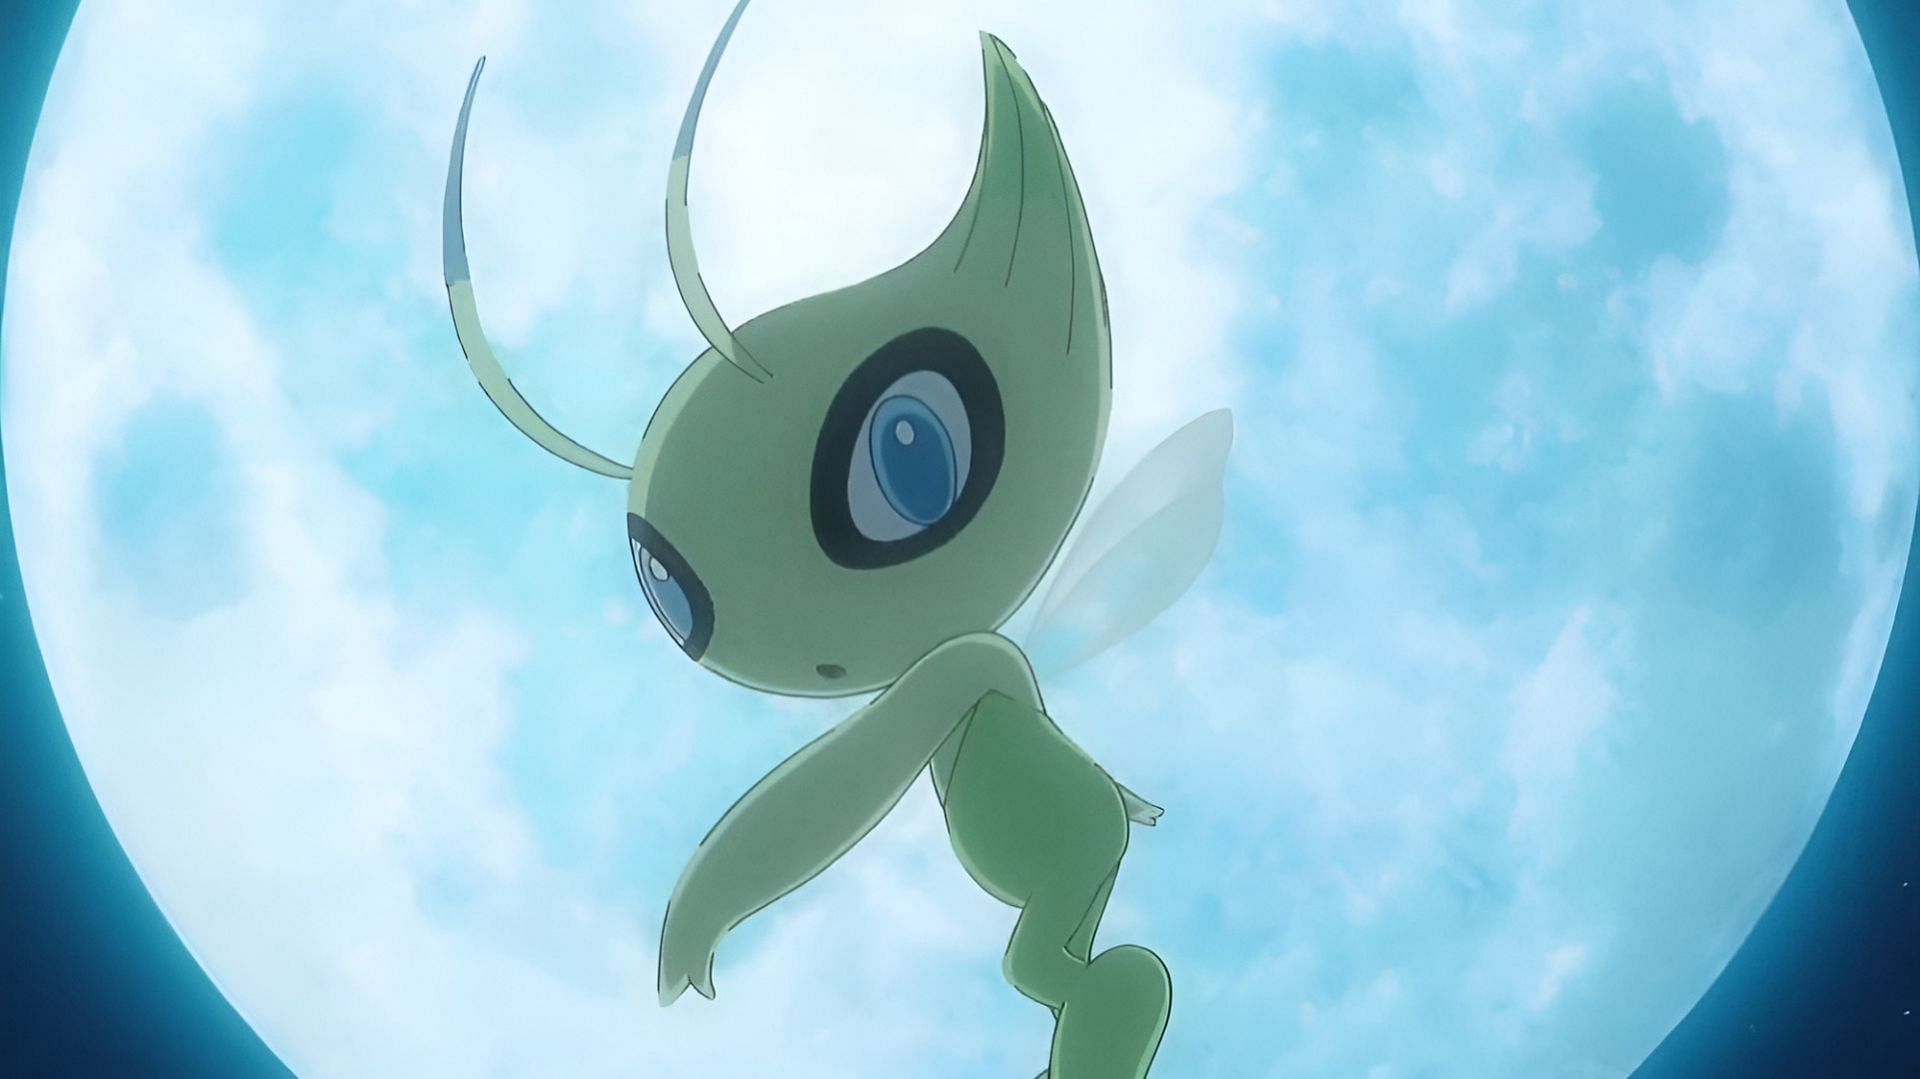 Celebi come appare nell'anime Pokemon (Immagine tramite The Pokemon Company)